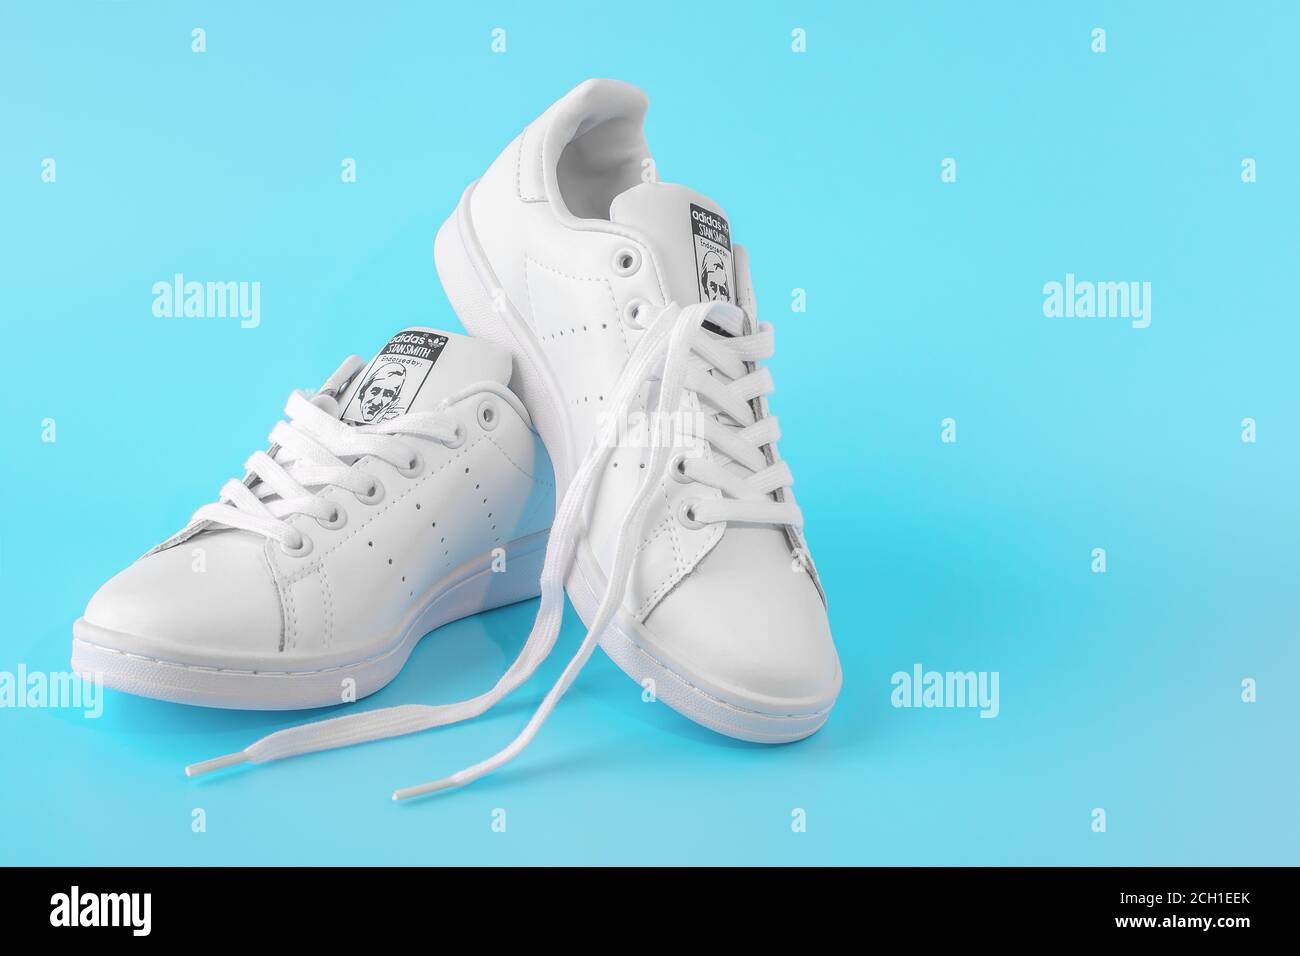 Mosca, Russia - 30 LUGLIO 2020: Scarpe bianche Adidas Stan Smith, Foto di  nuove sneakers bianche su sfondo blu. Adidas è un'azienda internazionale il  Foto stock - Alamy